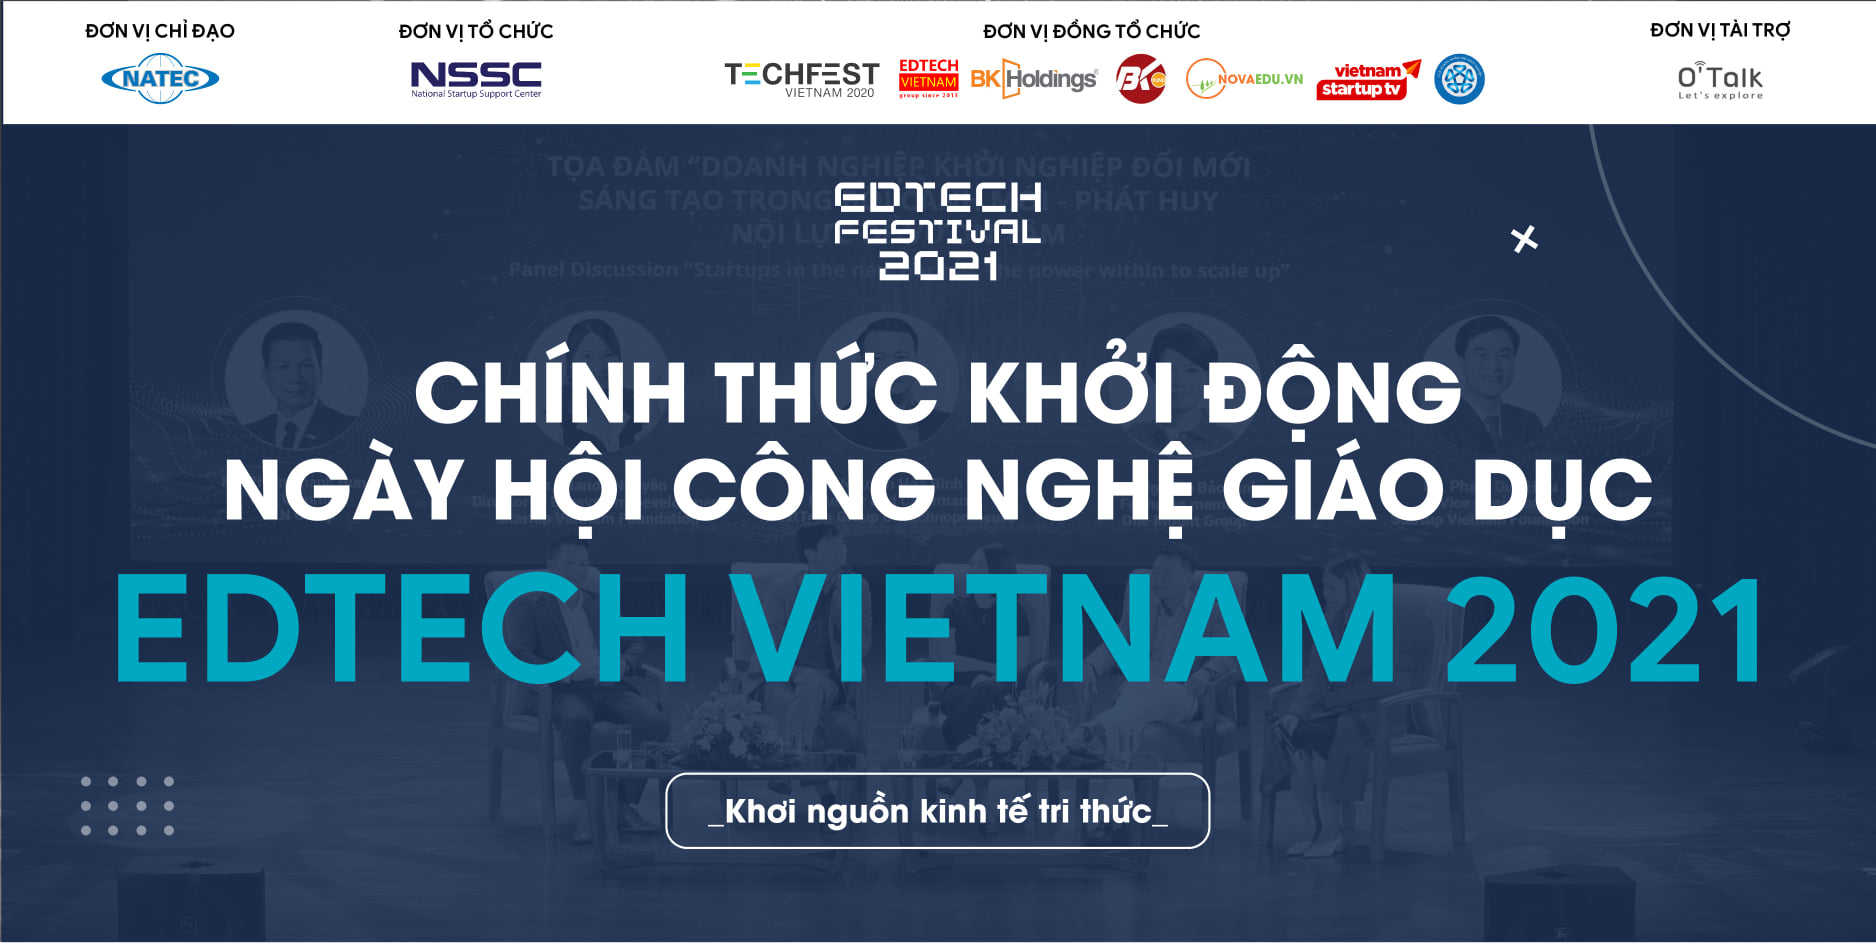 Cuộc thi tìm kiếm ngôi sao khởi nghiệp - Edtech Vietnam 2021